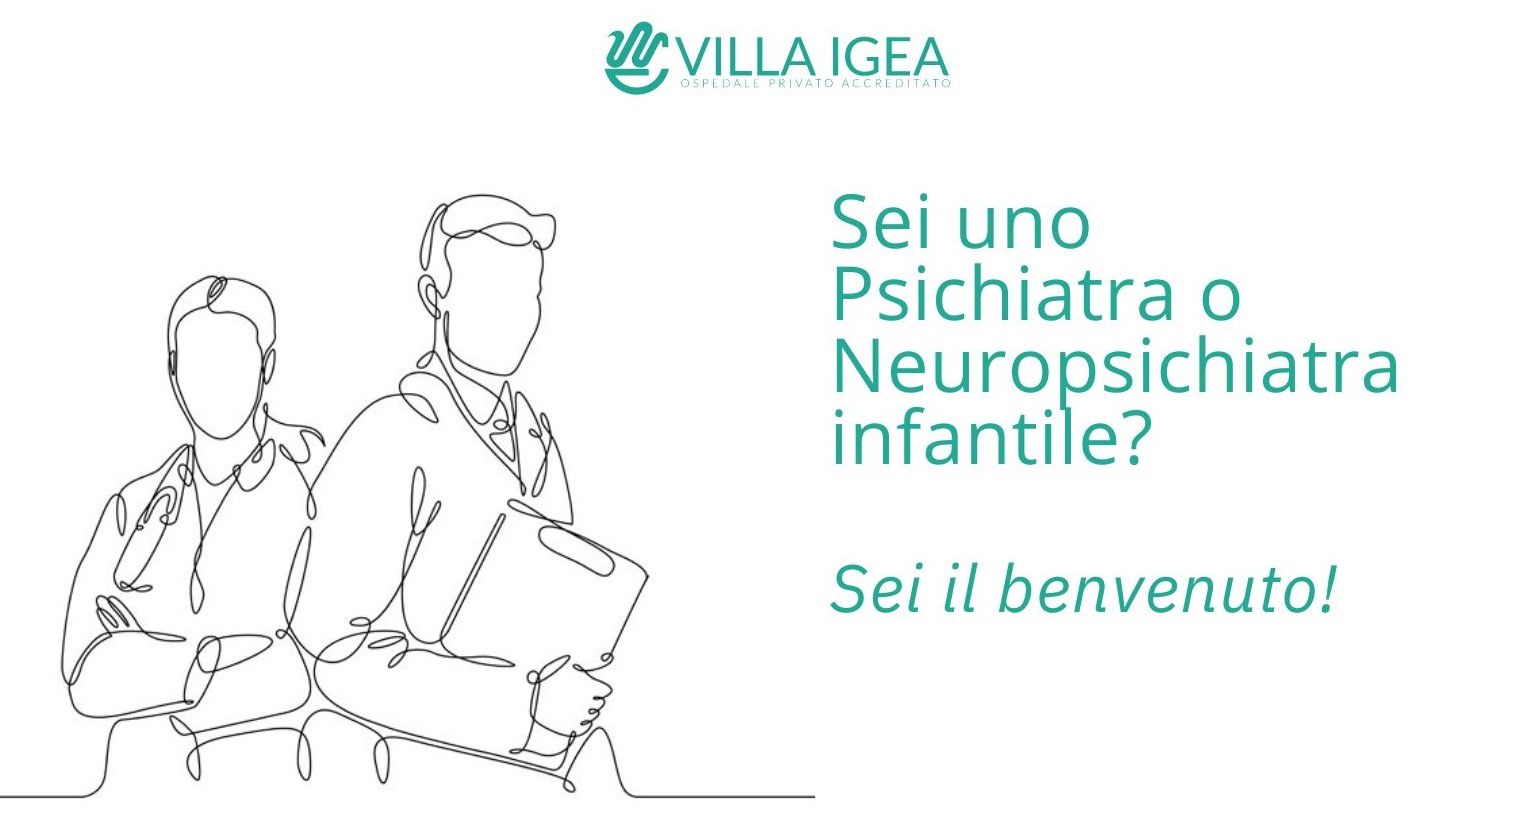 Clicca per accedere all'articolo Villa Igea di Modena ricerca psichiatri e neuropsichiatri infantili